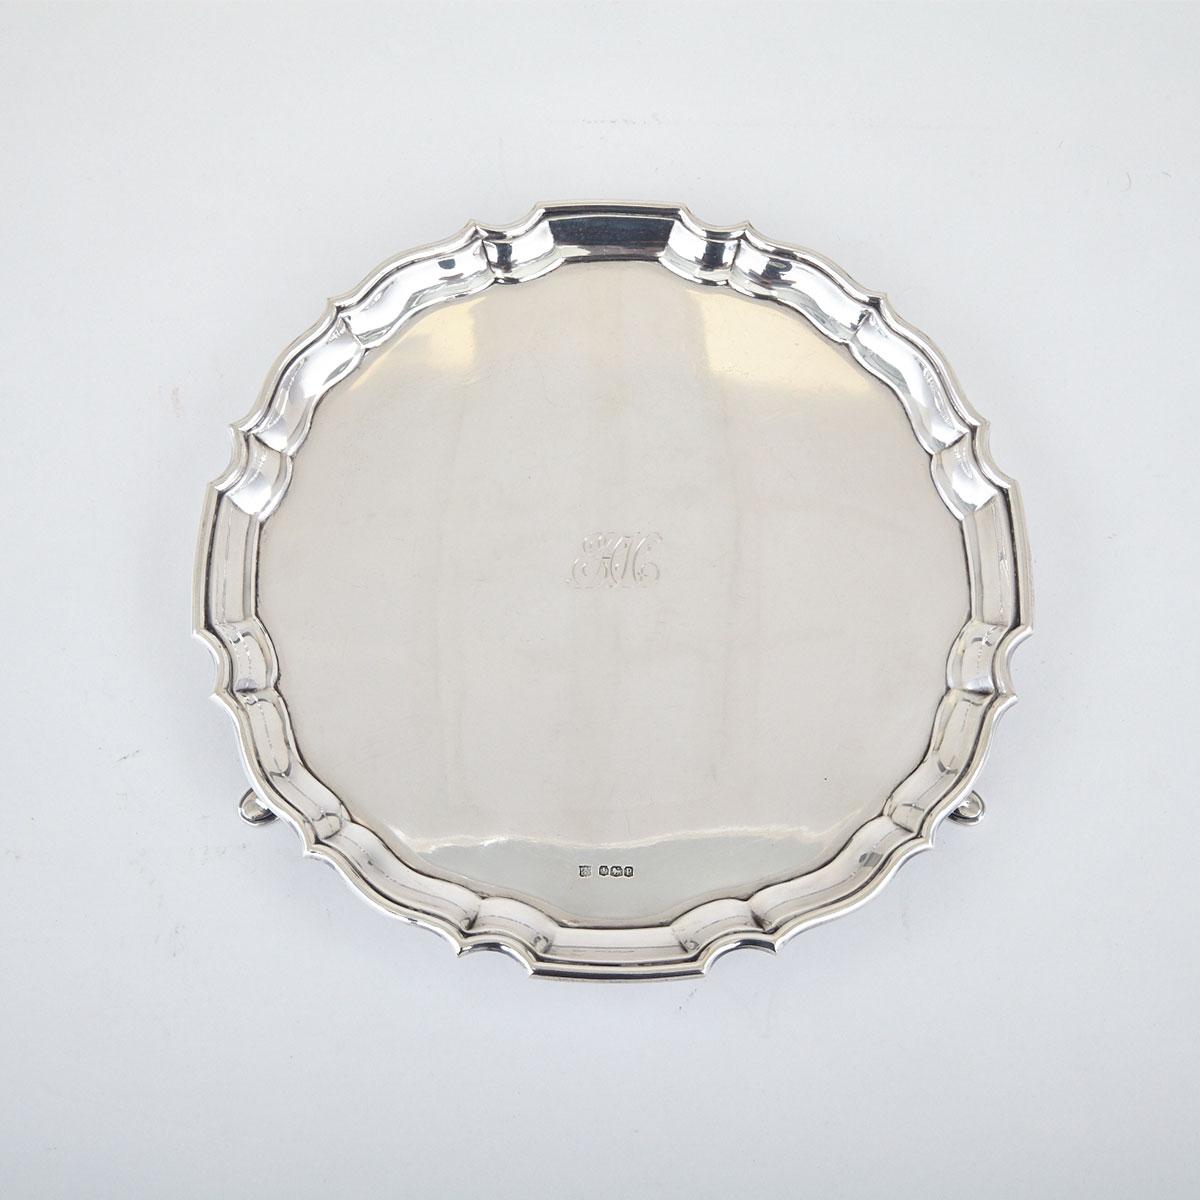 English Silver Circular Salver, Fenton Bros. Ltd., Sheffield, 1932